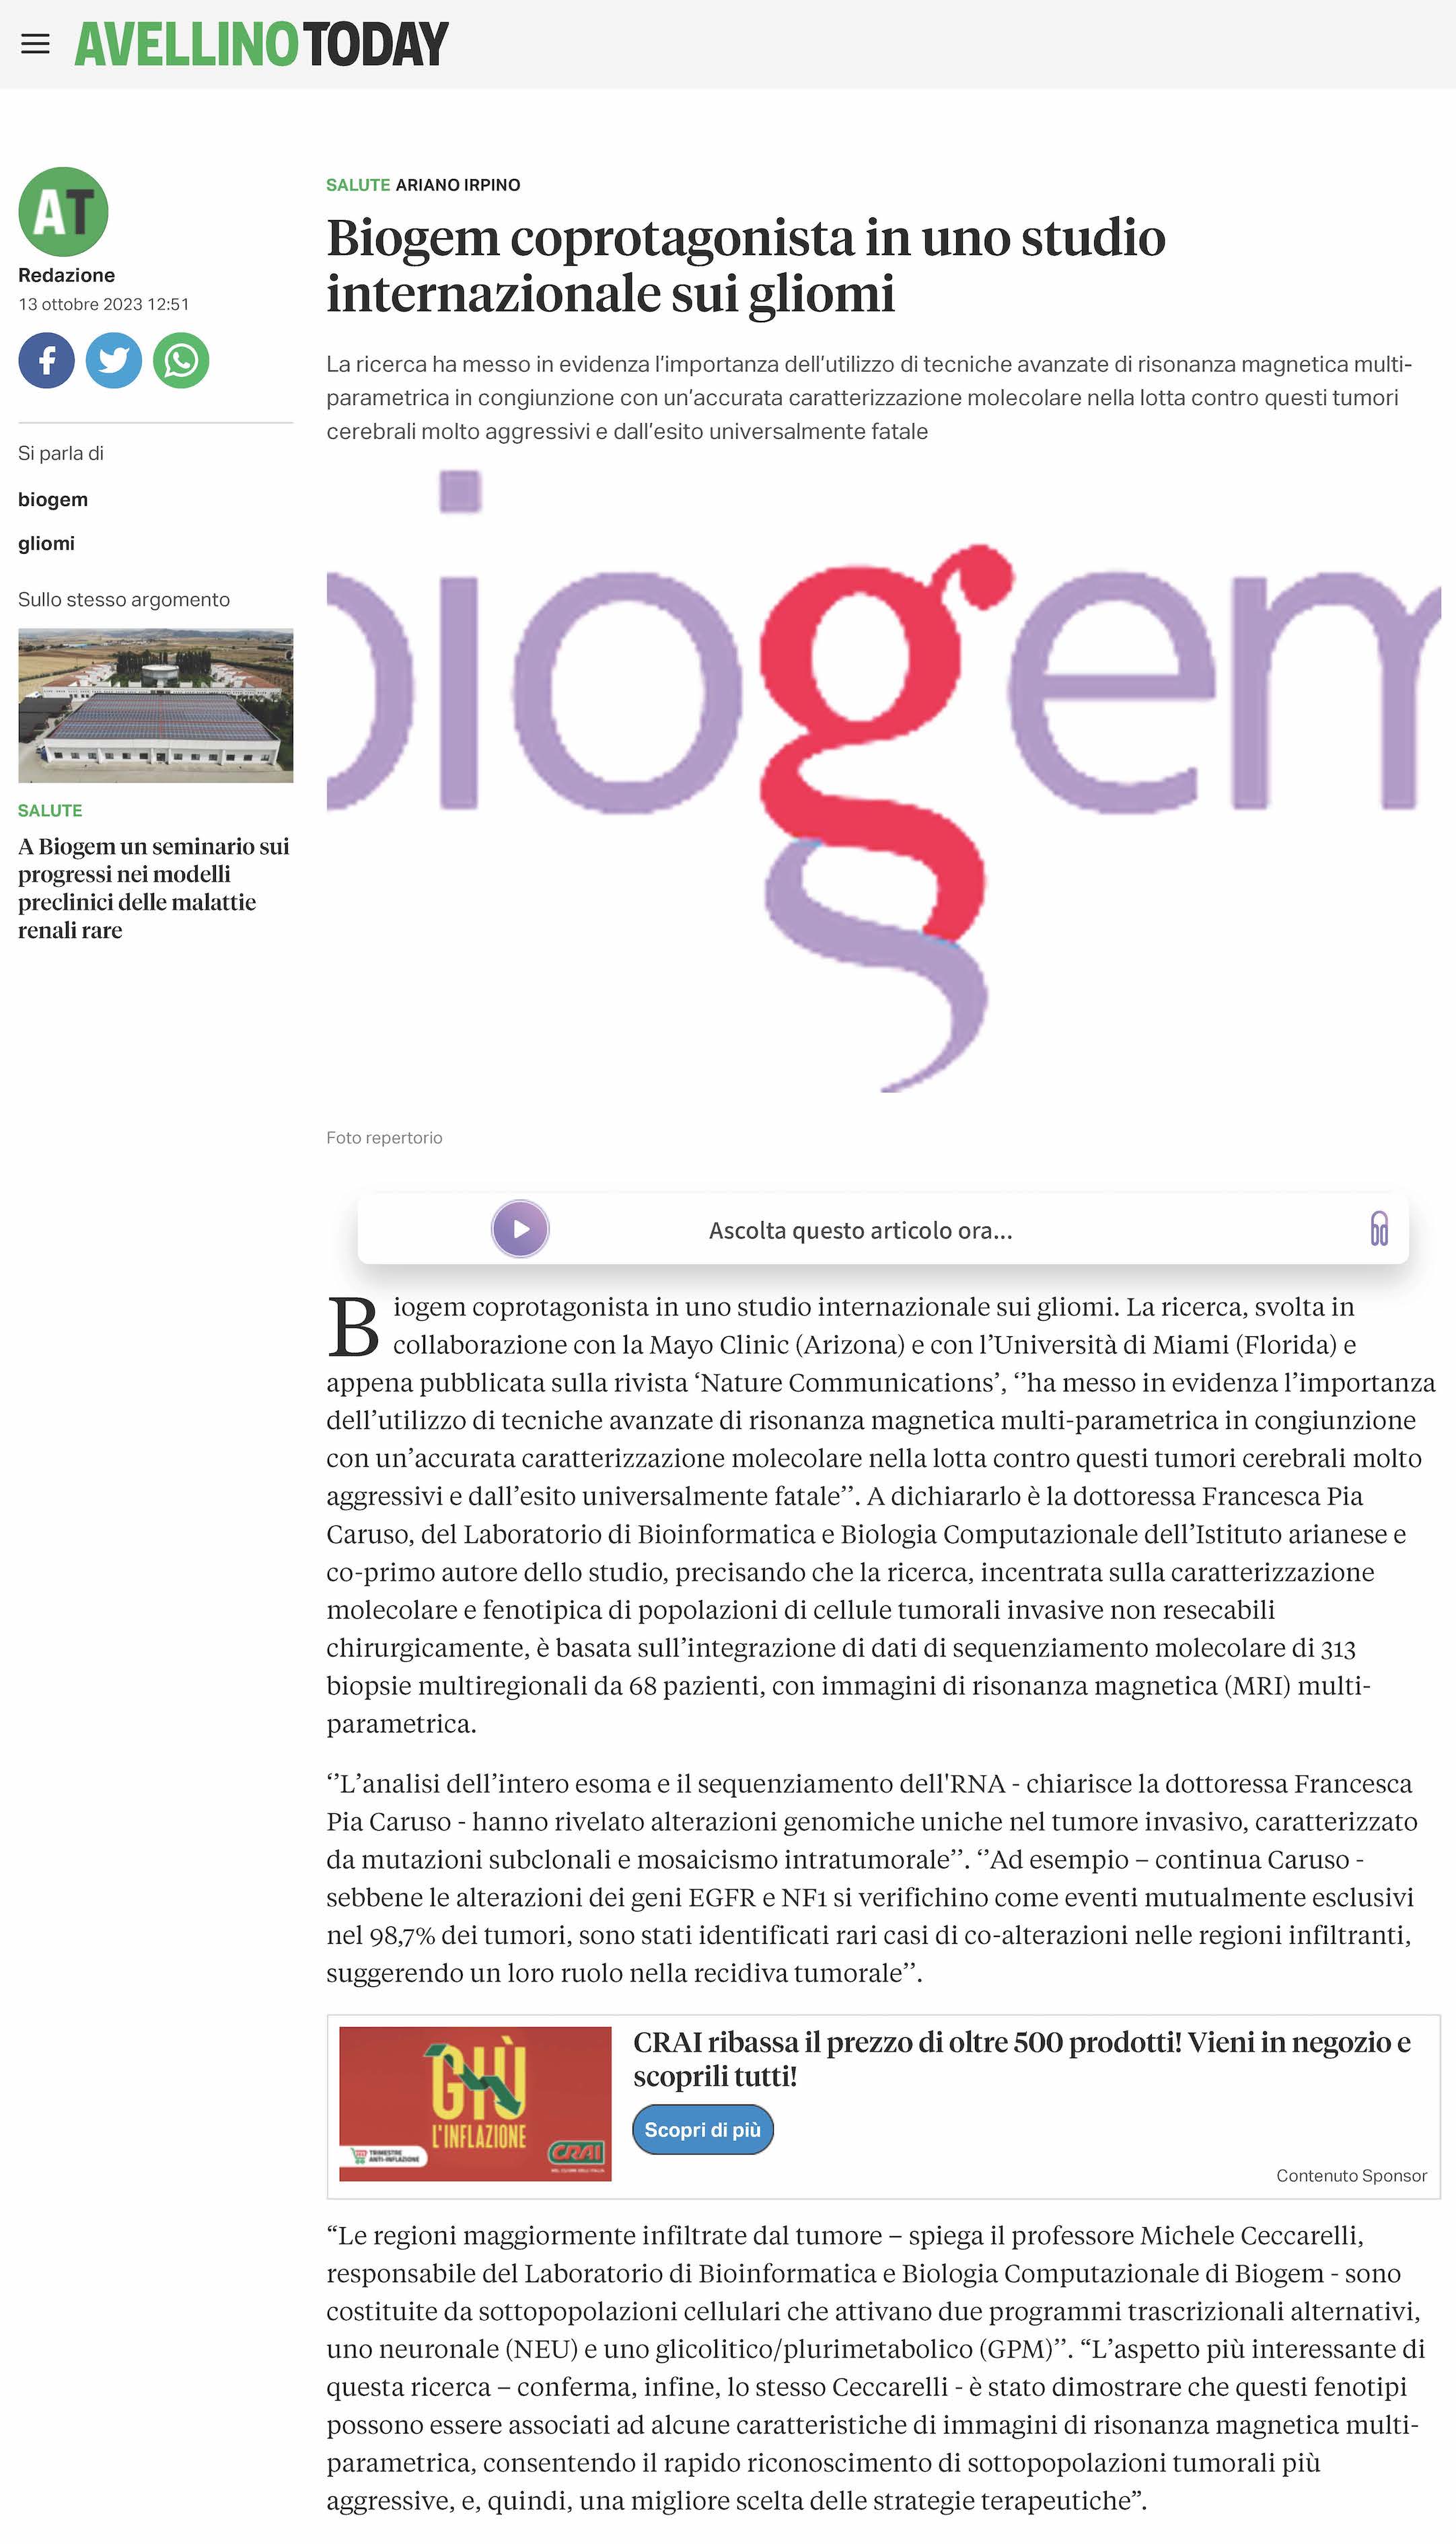 Biogem coprotagonista in uno studio internazionale sui gliomi